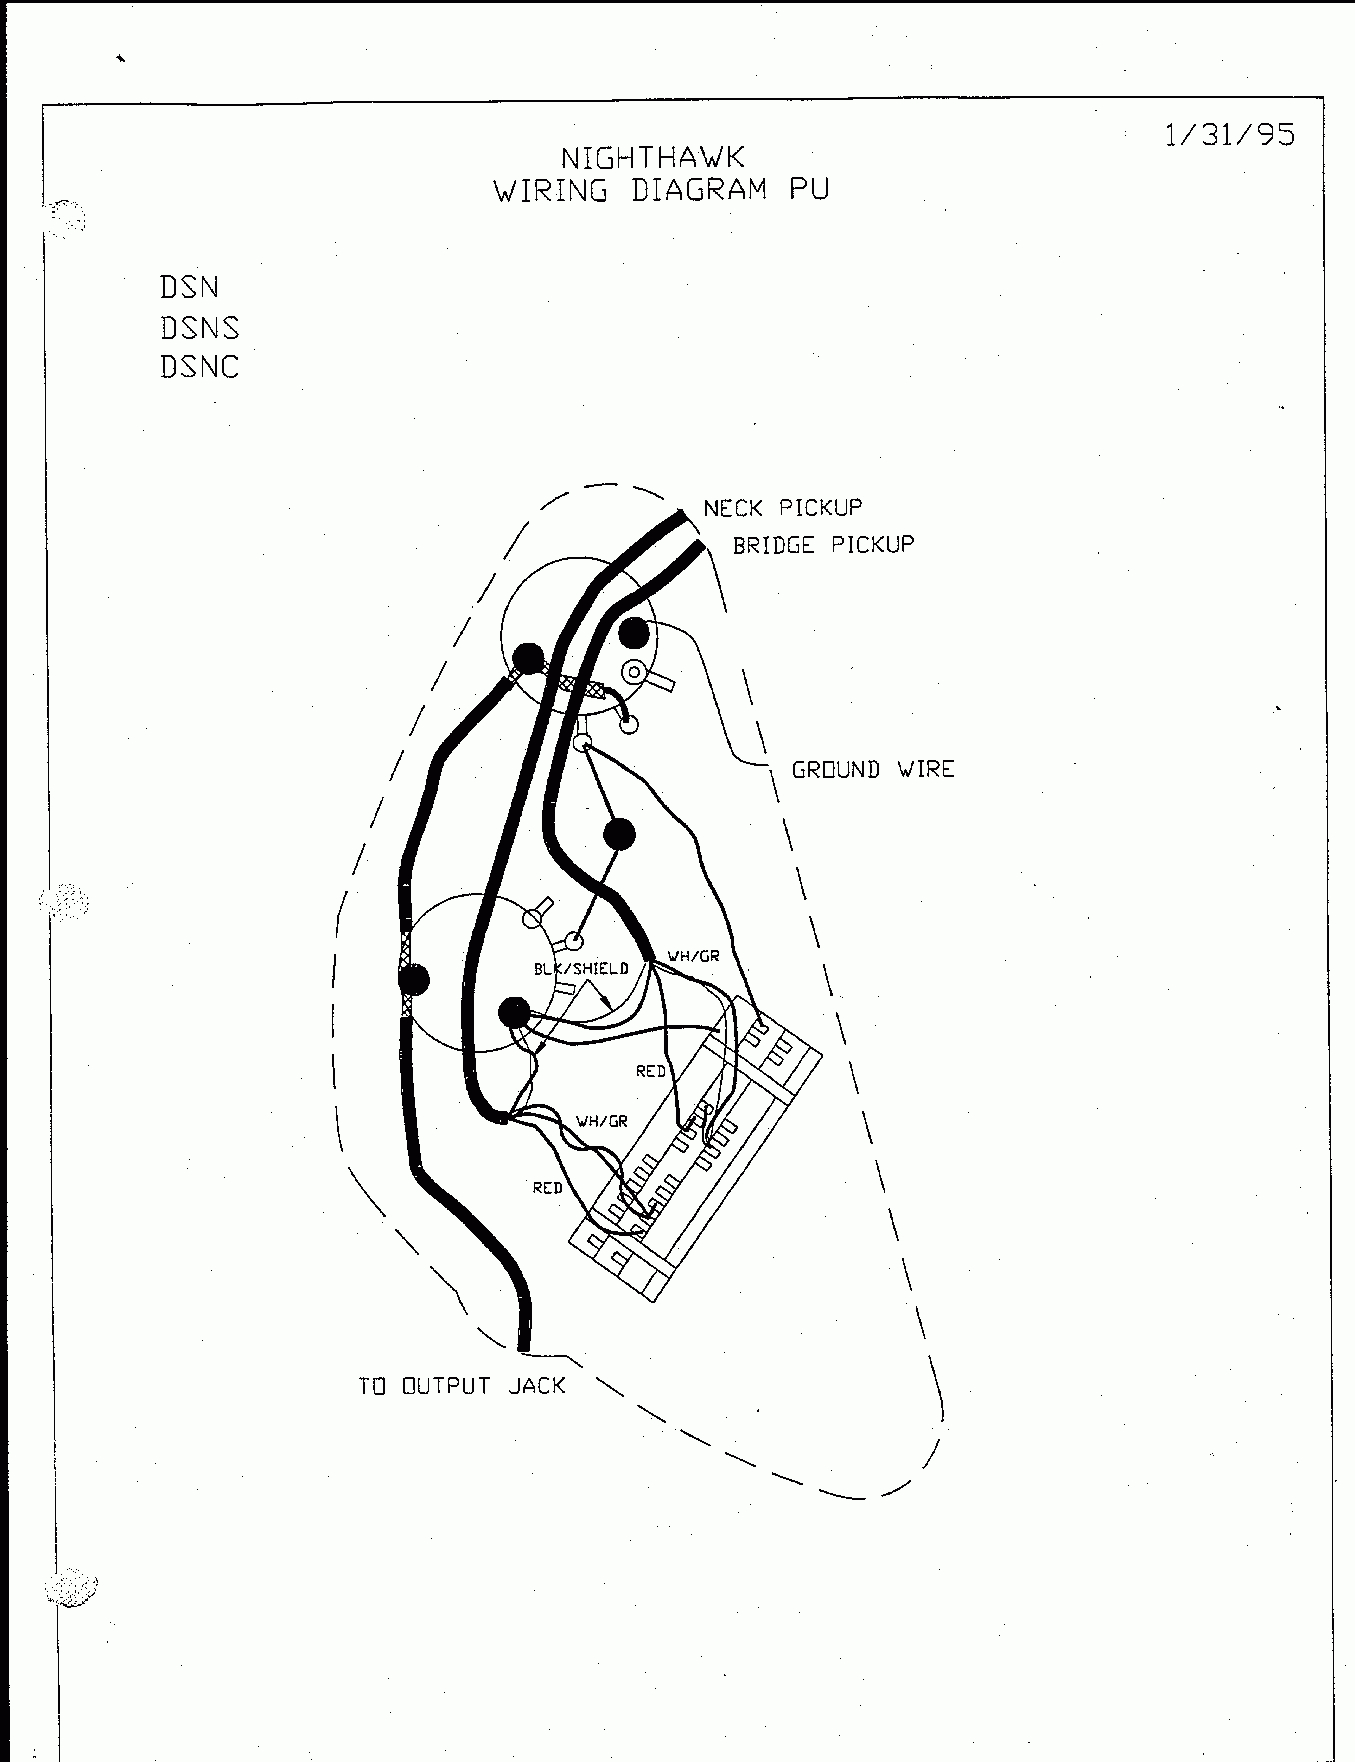 Schematics - Gibson Sg Wiring Diagram